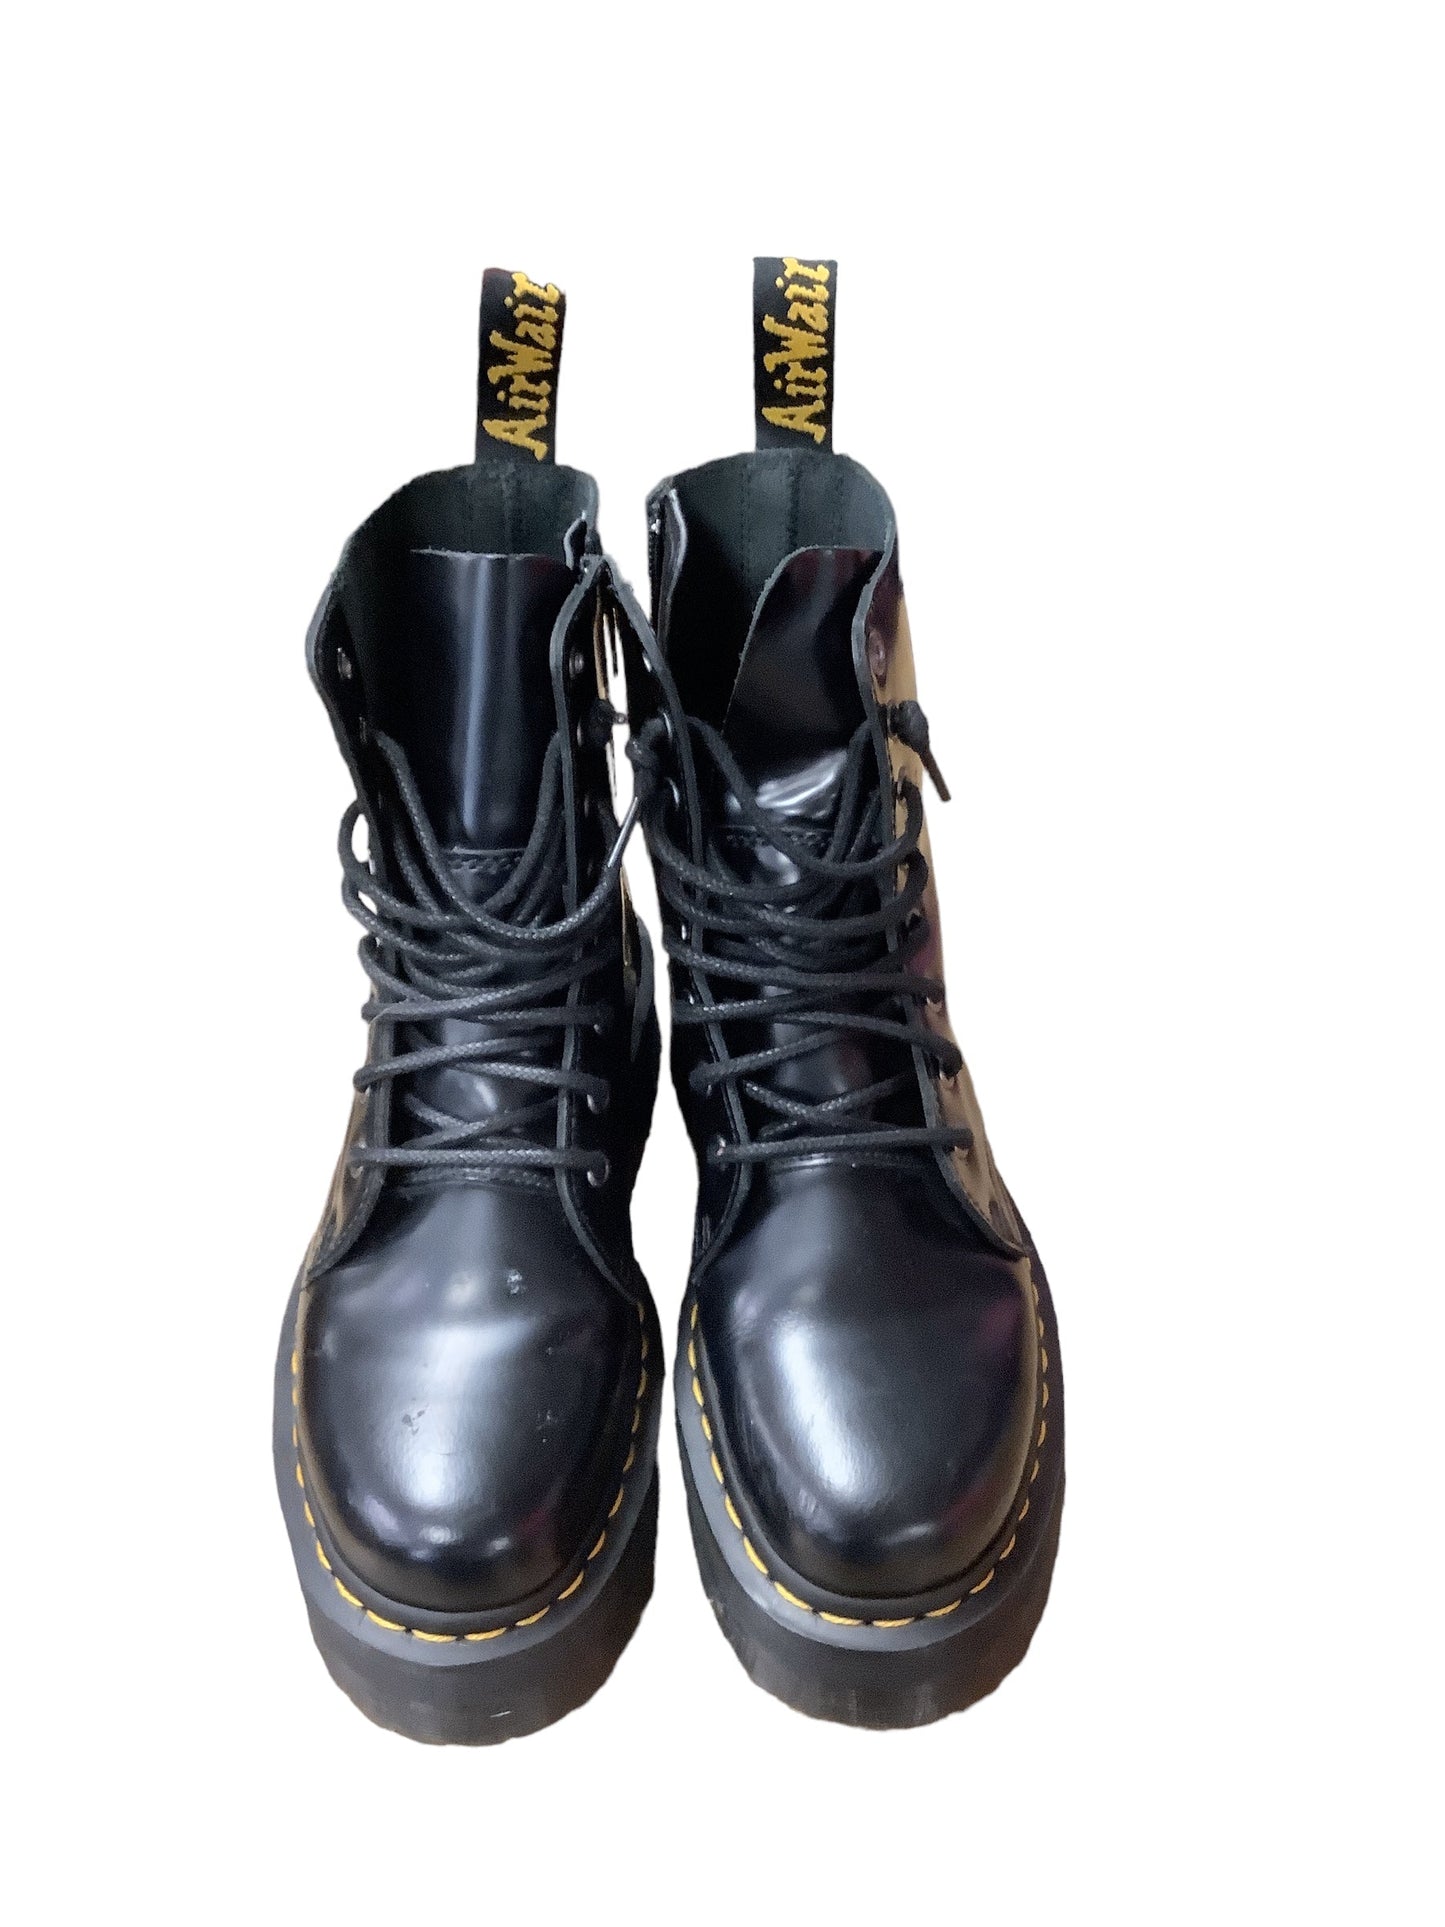 Black Boots Combat Dr Martens, Size 7